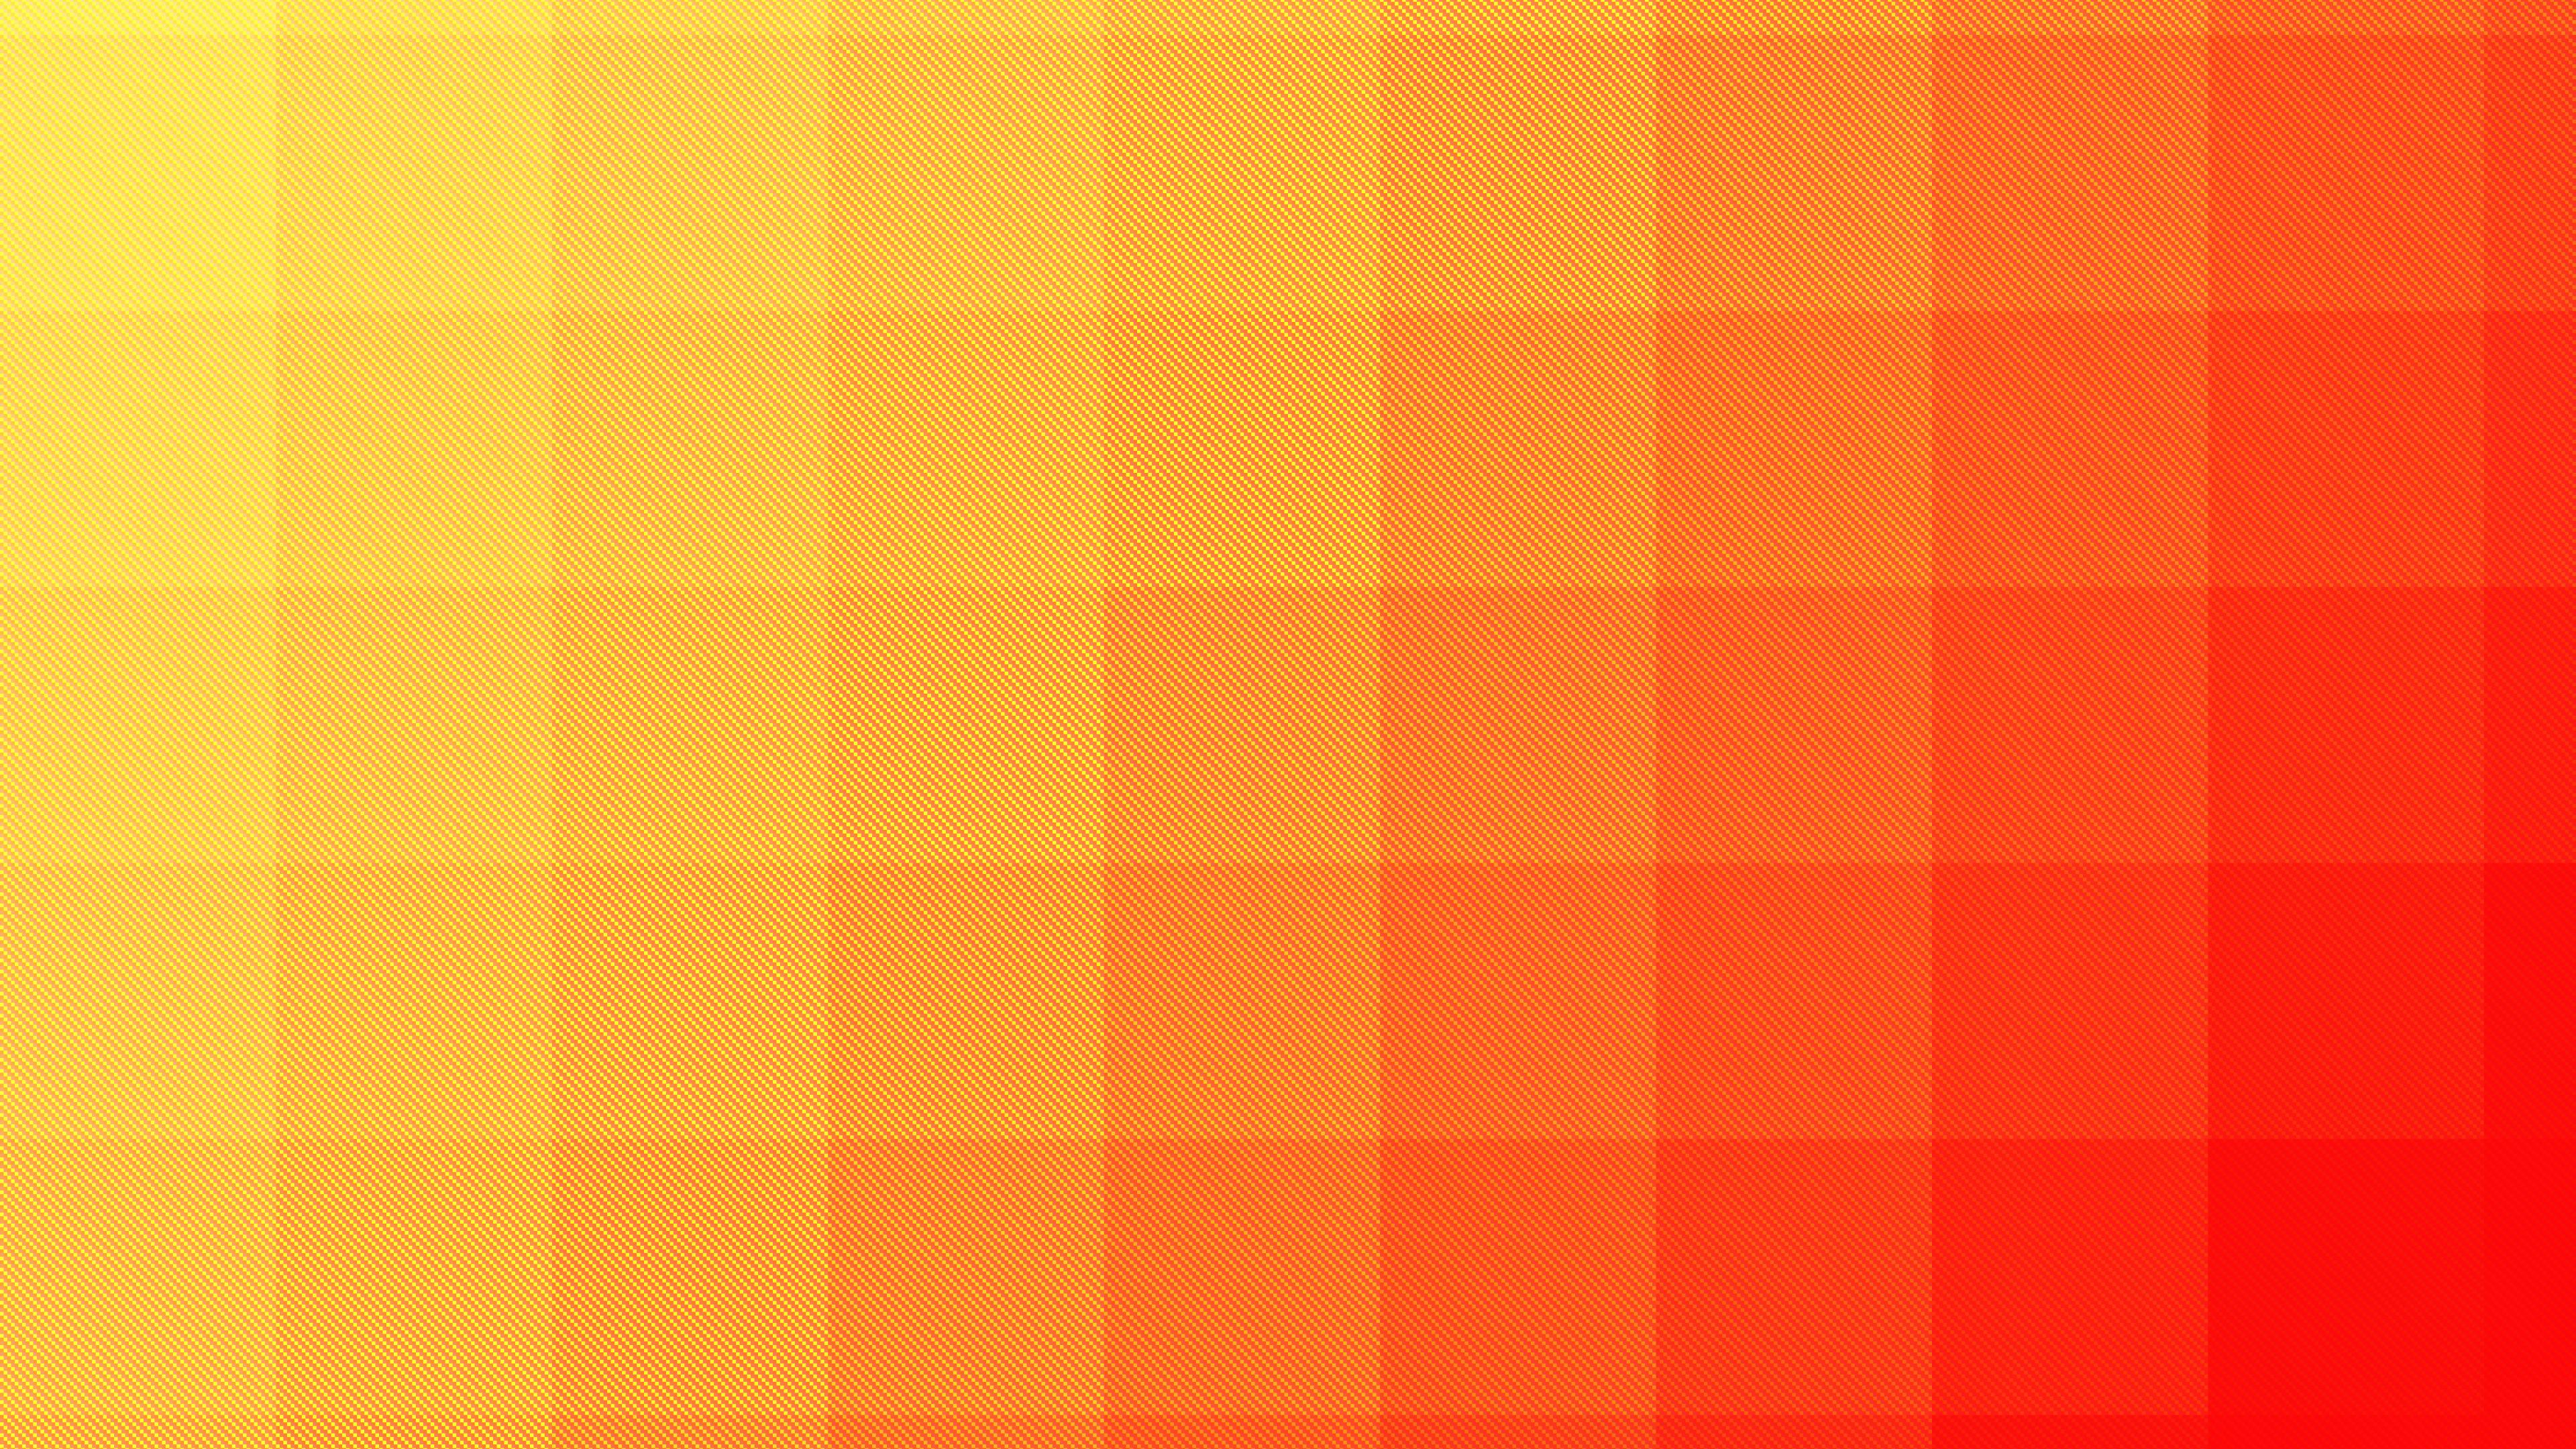 3840x2160 Aesthetic Desktop Orange Wallpapers